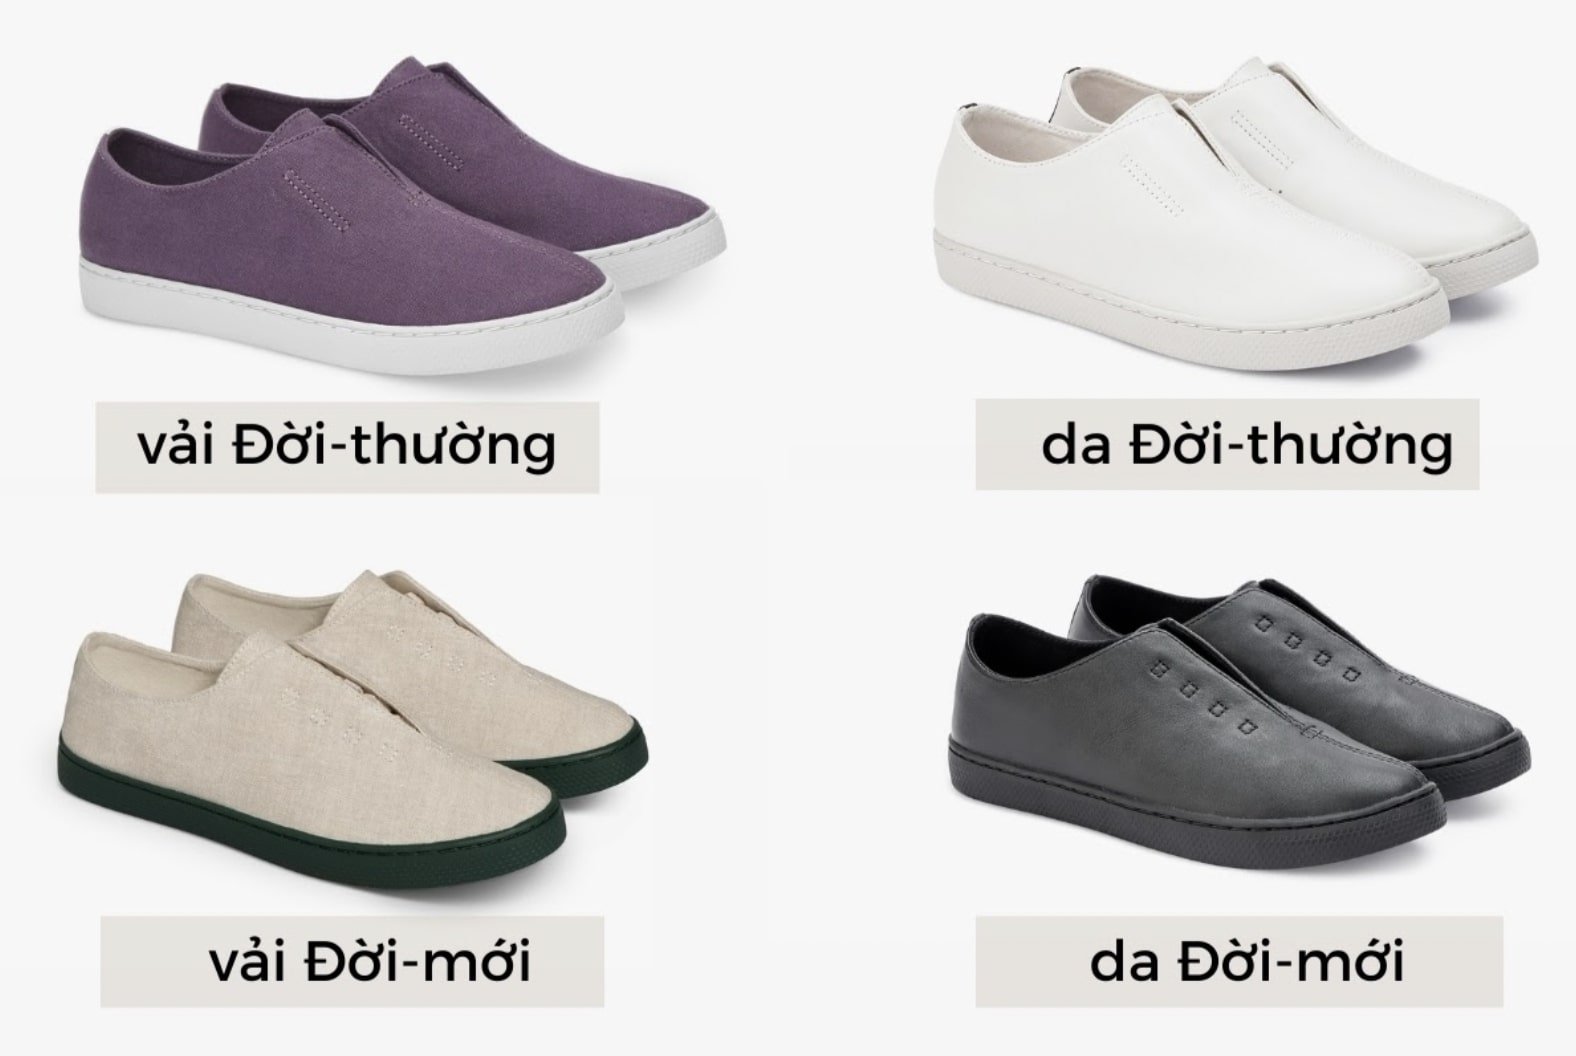 4 dòng giày tinh giản của thương hiệu MỘT